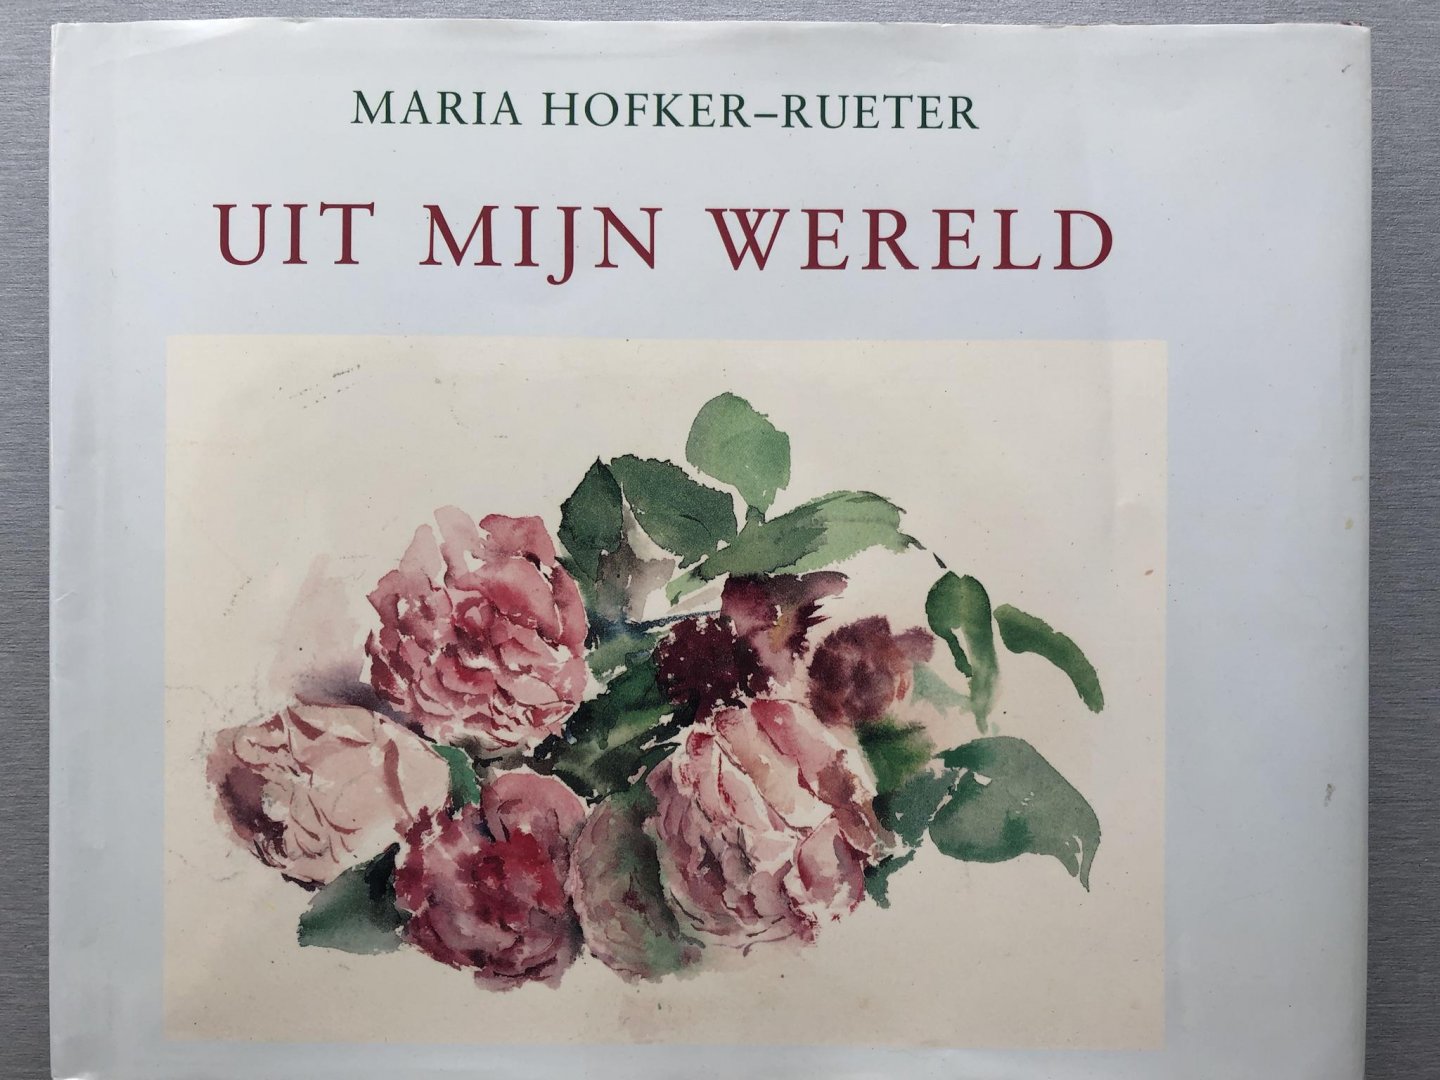 Hofker-Rueter, Maria [gesigneerd] - Uit mijn wereld. Aantekeningen over een tuin, tochten en reizen